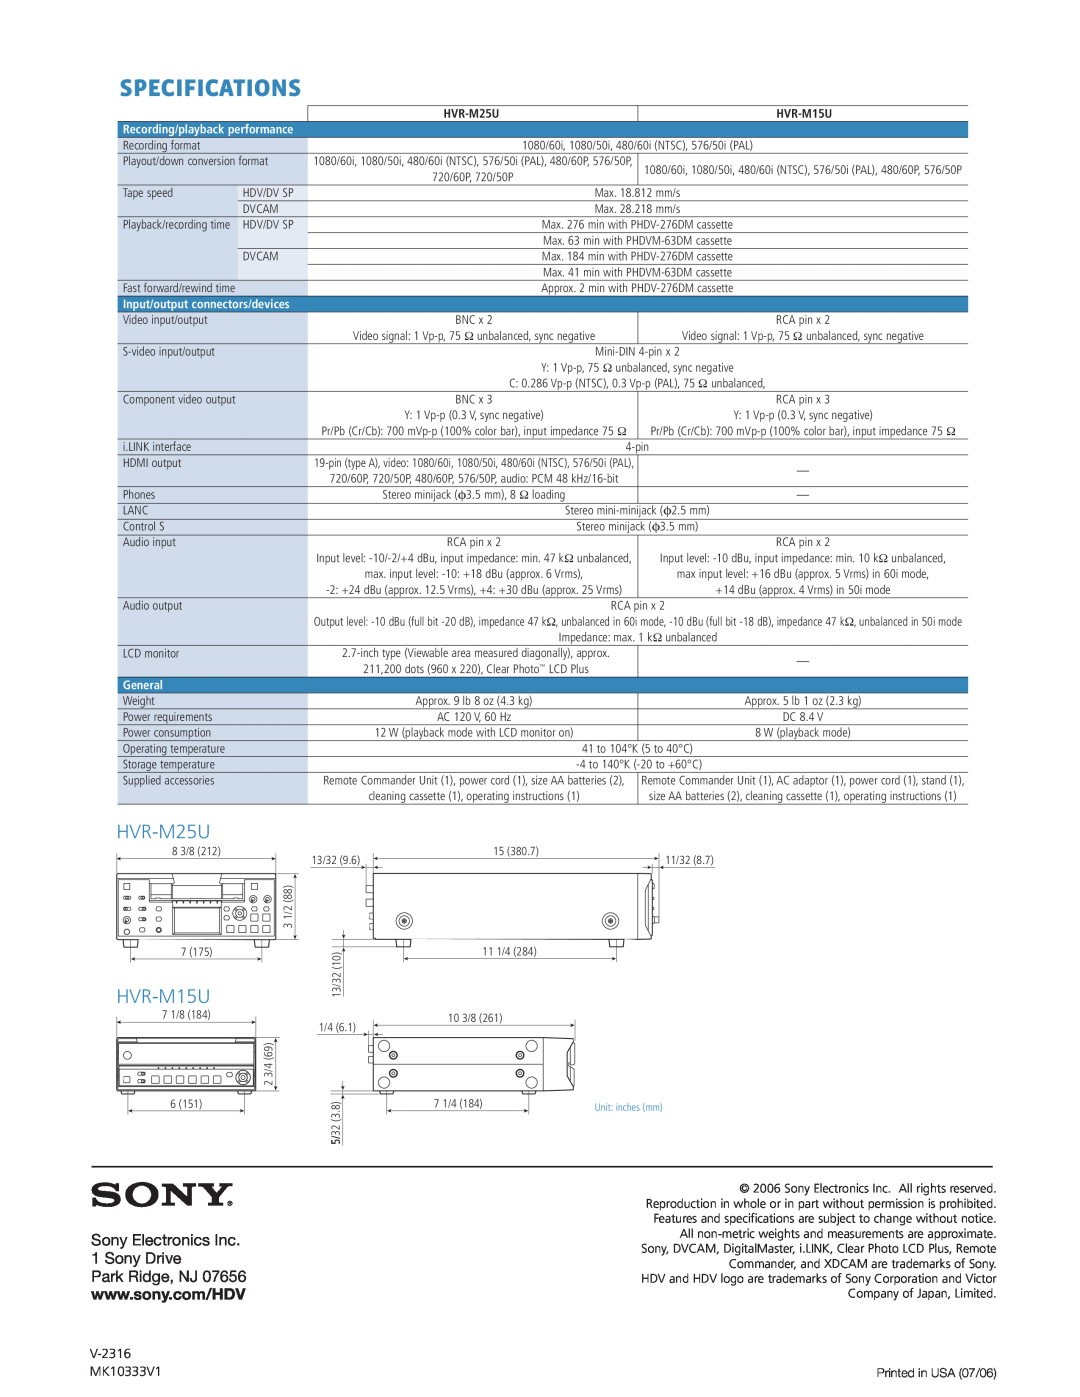 Sony HVR-M25U manual Specifications, HVR-M15U, V-2316, MK10333V1, General 